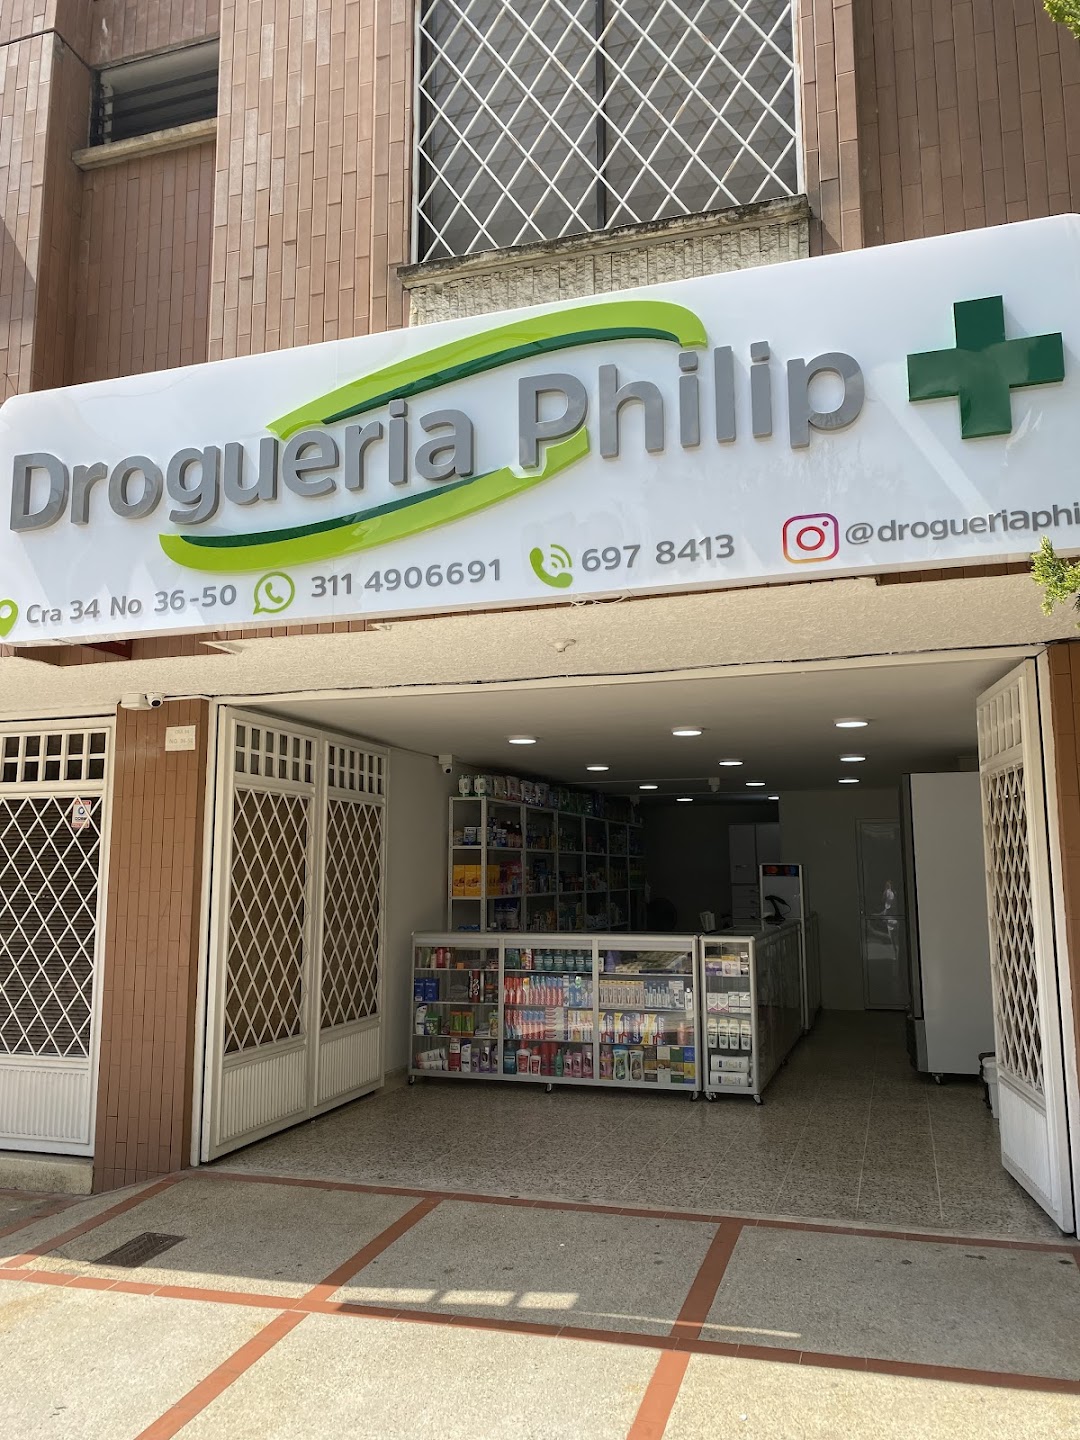 Drogueria Philip